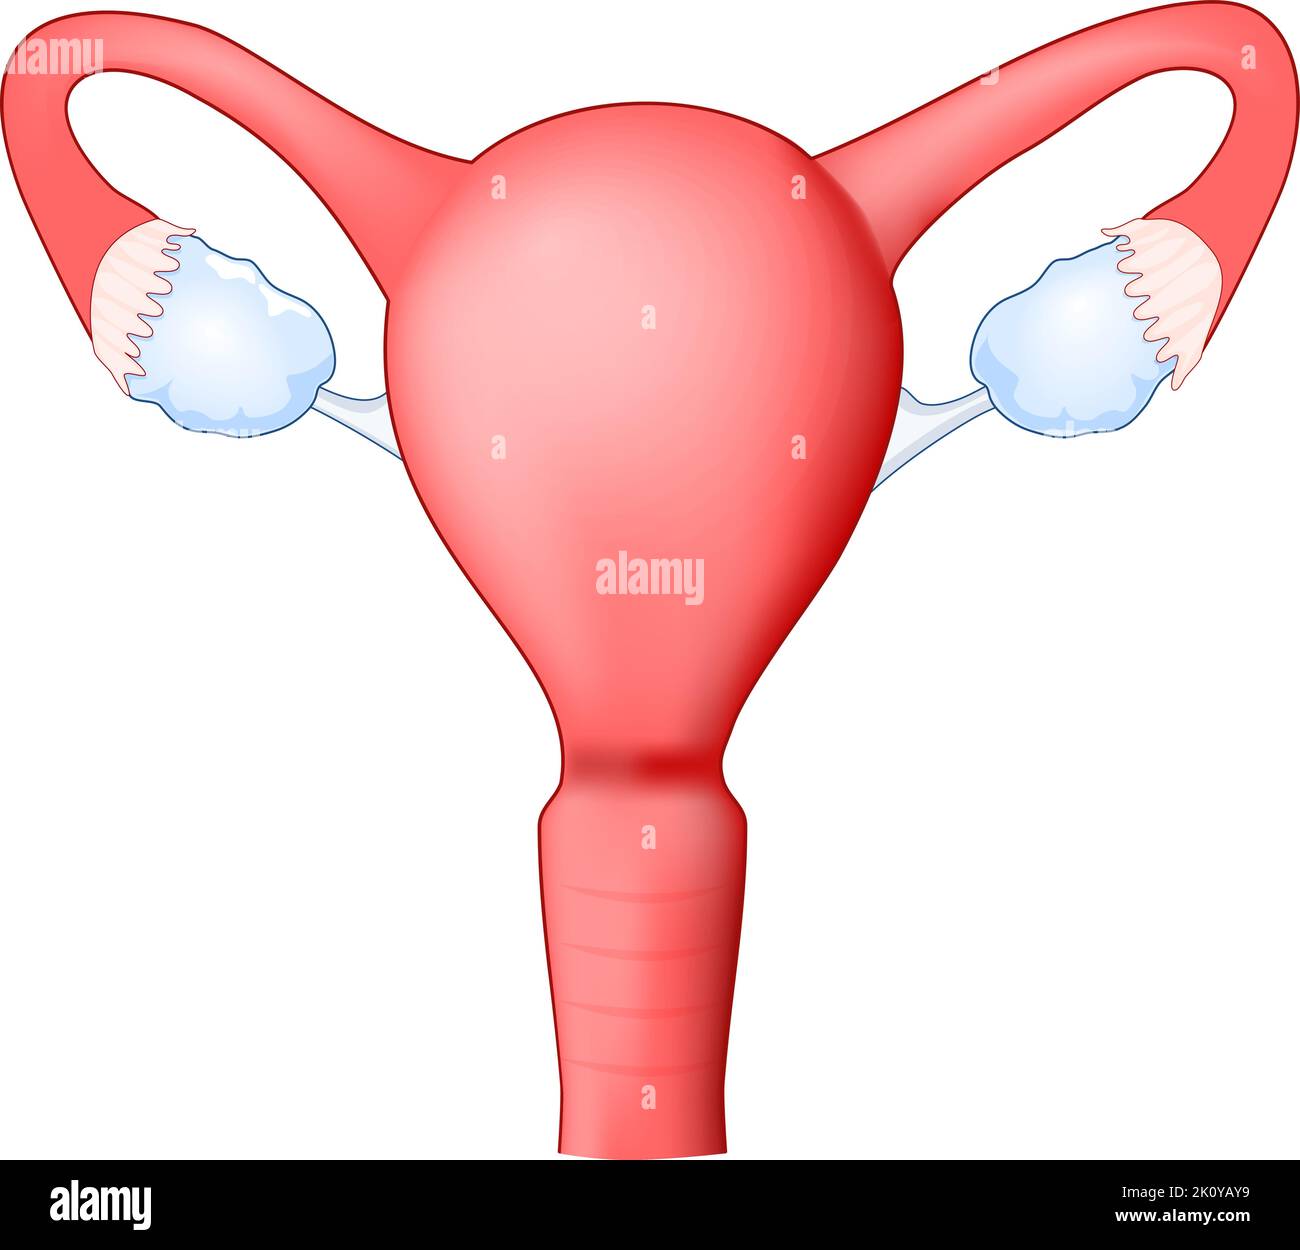 Útero humano con vagina, ovario y trompa de Falopio. Sistema reproductor femenino. Vista frontal. Anatomía humana. Icono. Ilustración médica realista Ilustración del Vector